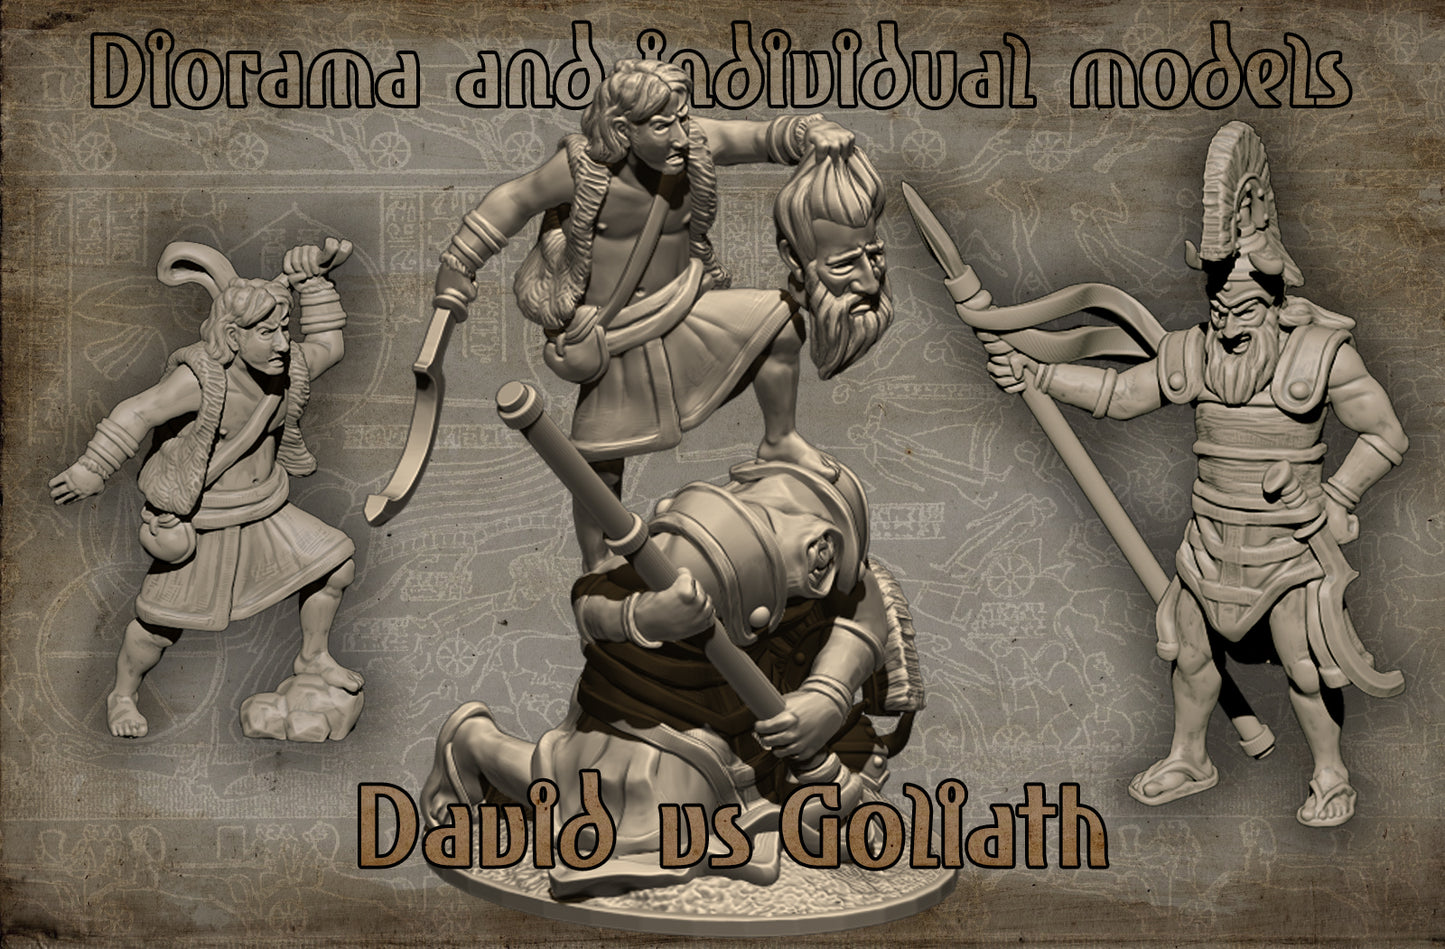 David vs Goliath Set